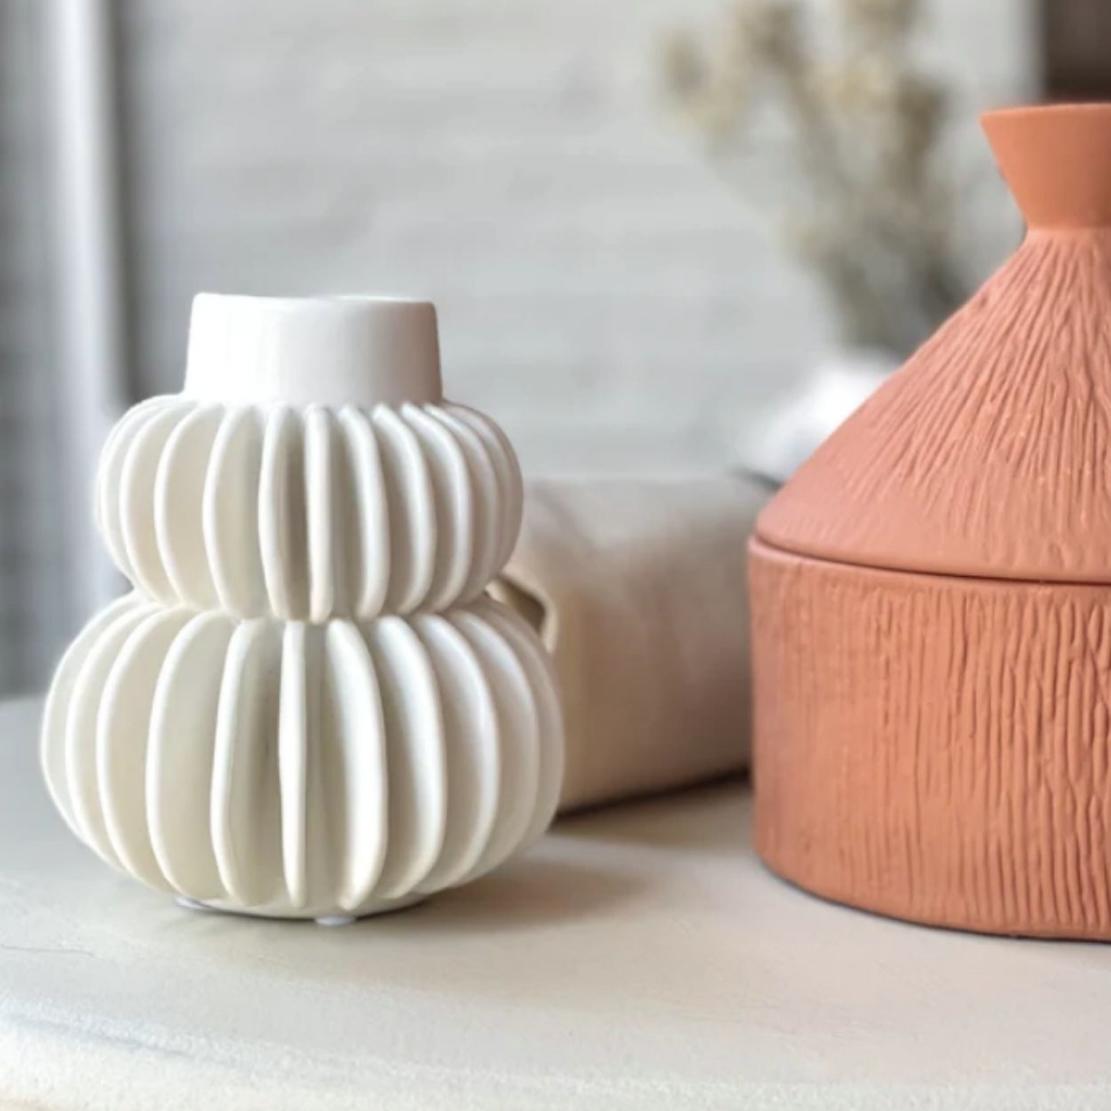 White, line ball ceramic vase